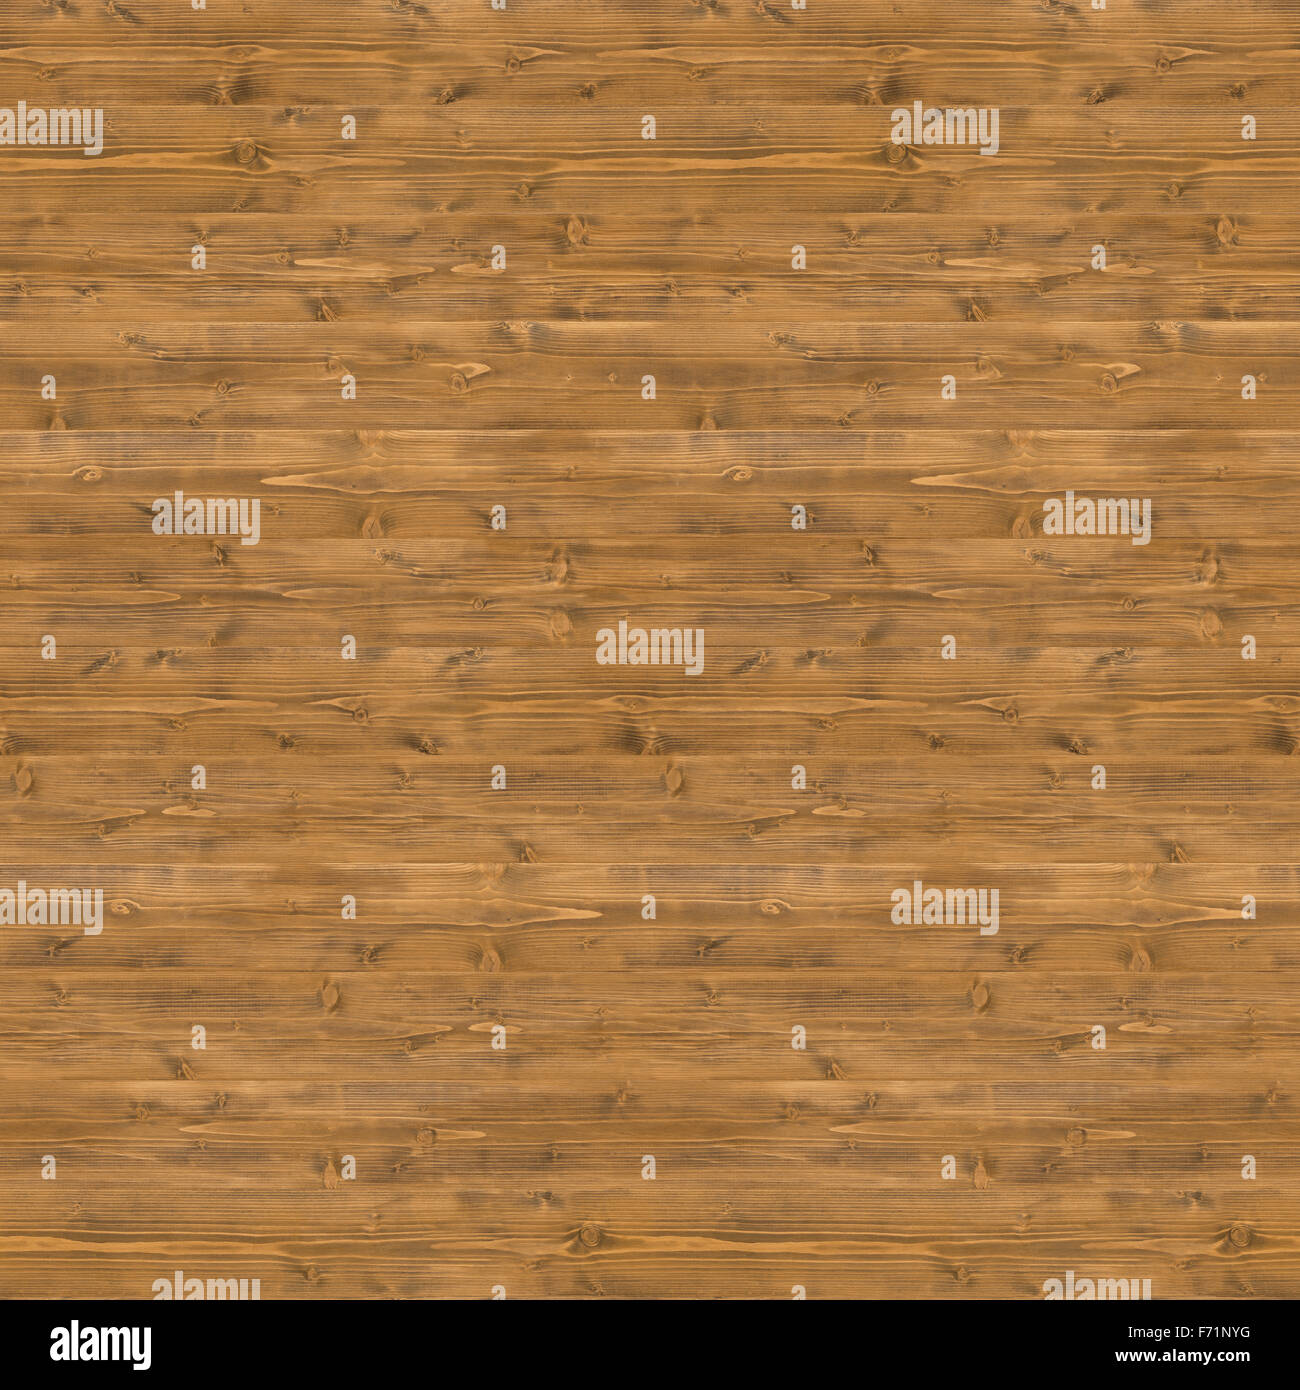 Textura de madera marrón rústico sin fisuras. Puede utilizarse como patrón de suelo, pared o fondo de la tabla. Foto de stock